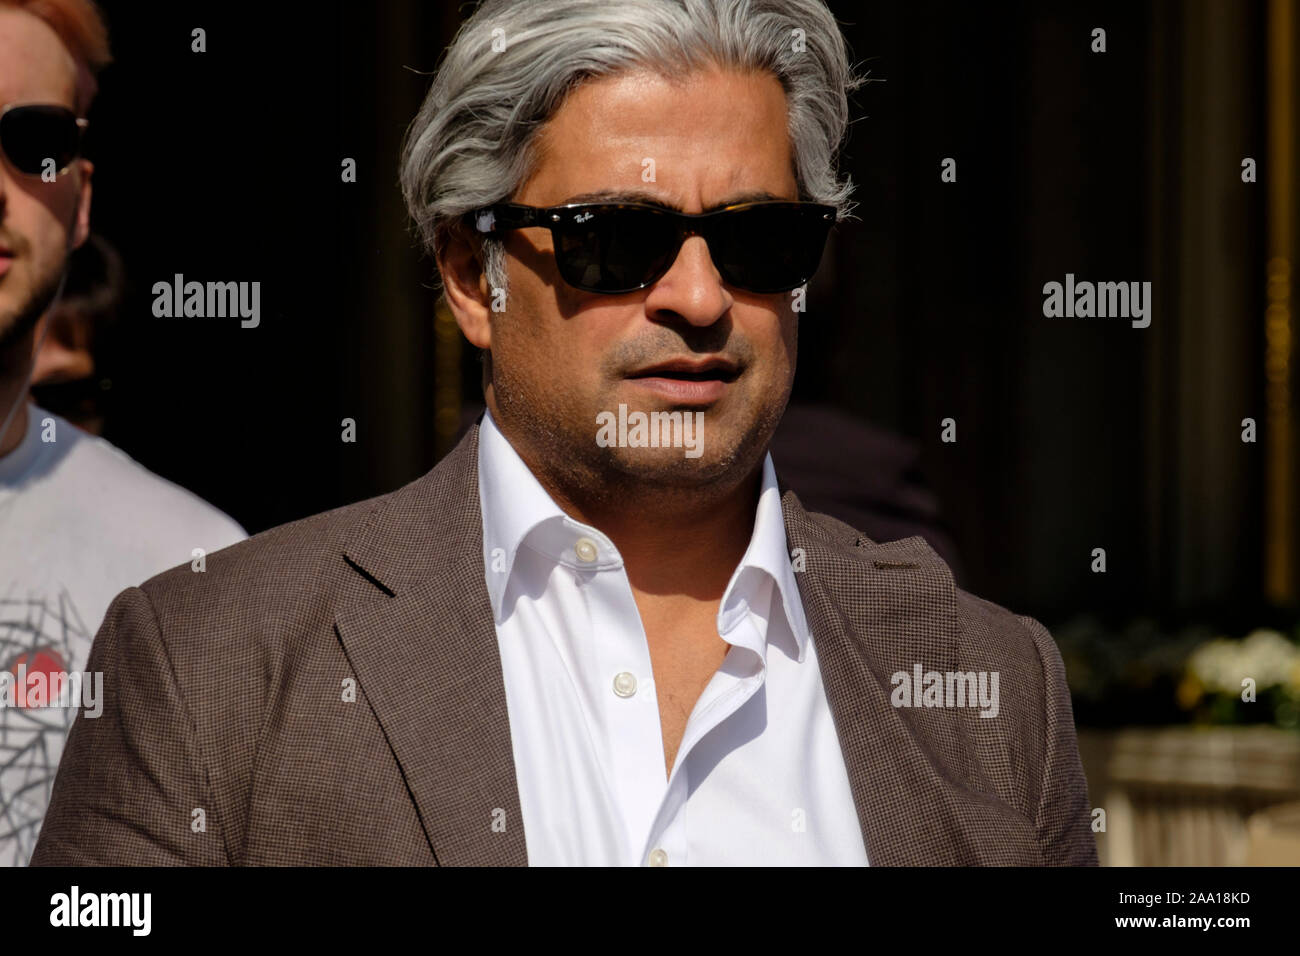 Homme, 40s, cheveux gris, lunettes de soleil Ray Ban, aspect moyen-oriental sur London Street. Banque D'Images